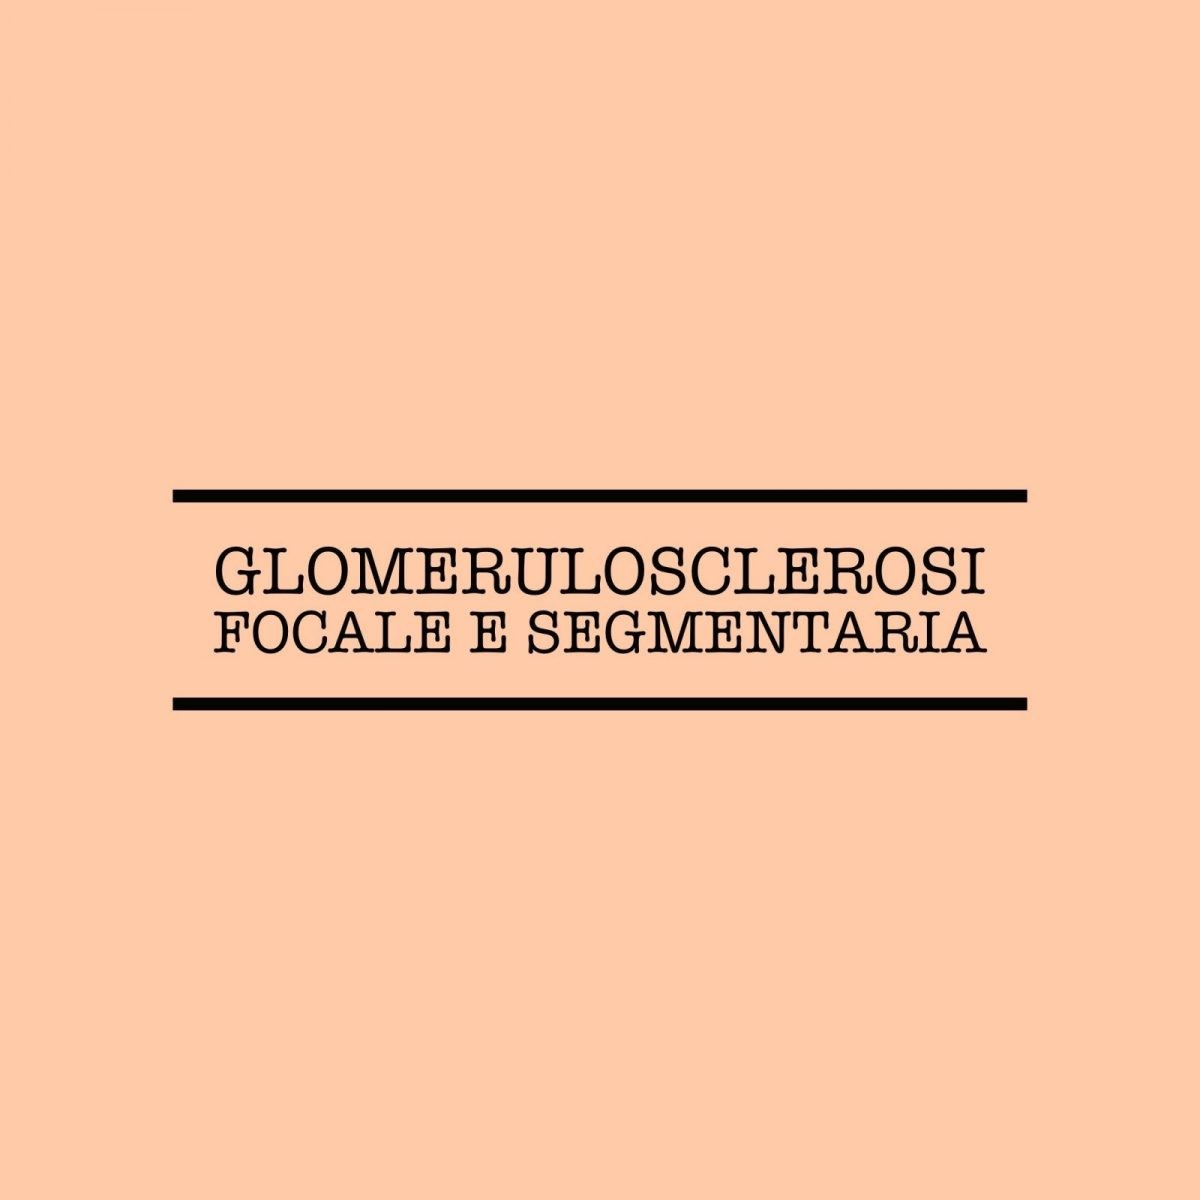 Glomerulosclerosi focale e segmentaria - Serendipity360